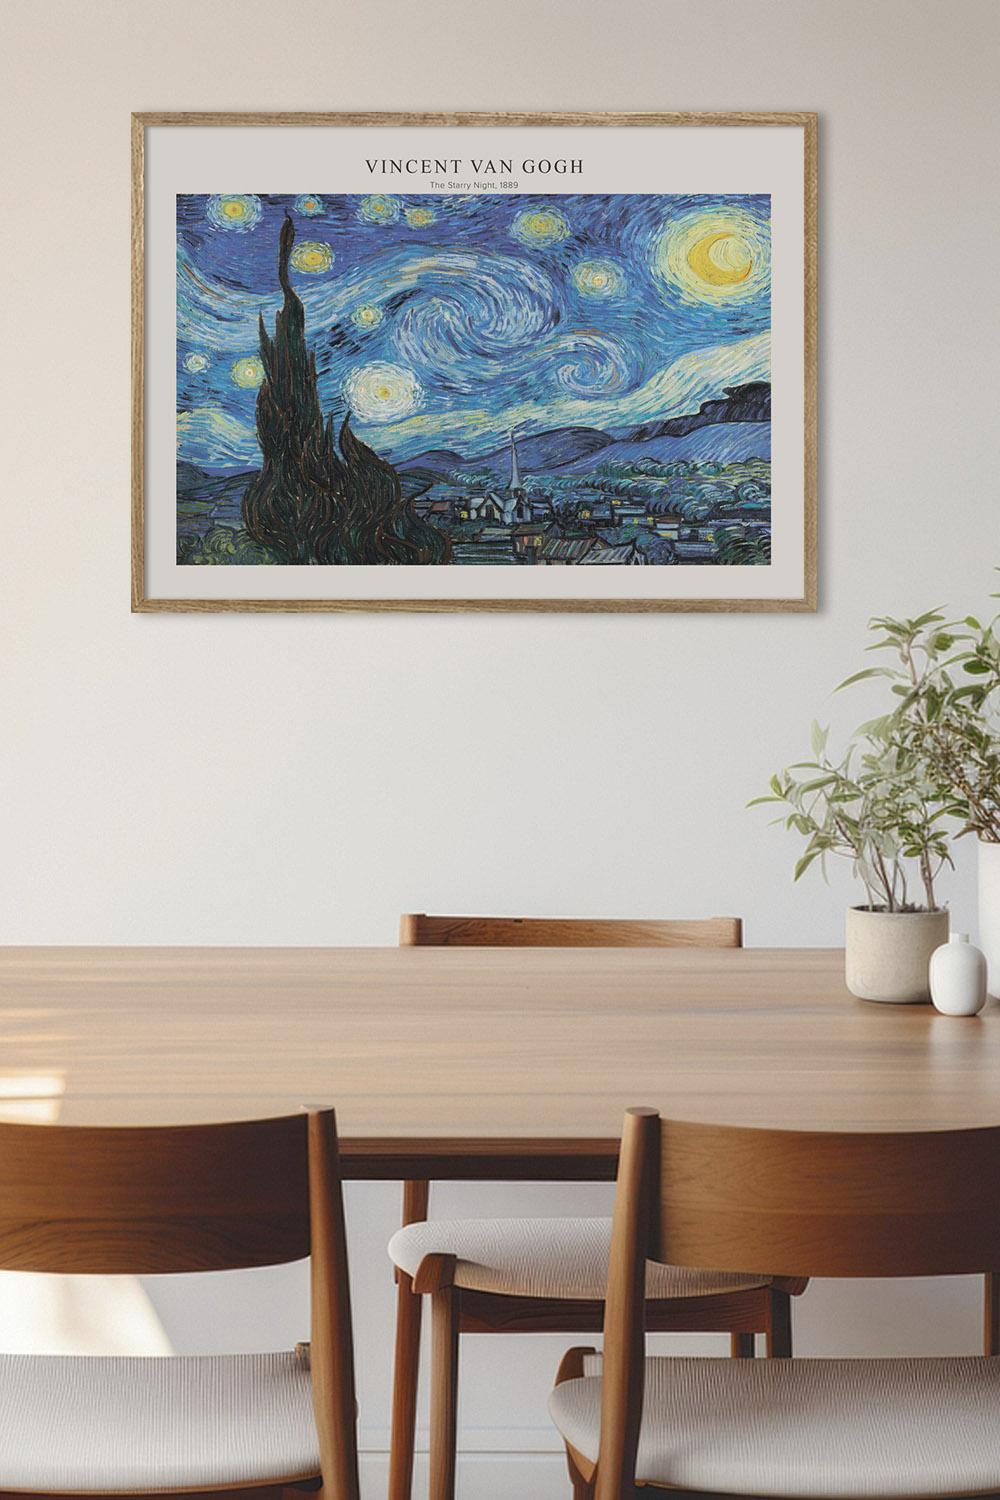 Постер Vincent van Gogh The Starry Night #2 купить в интернет ...